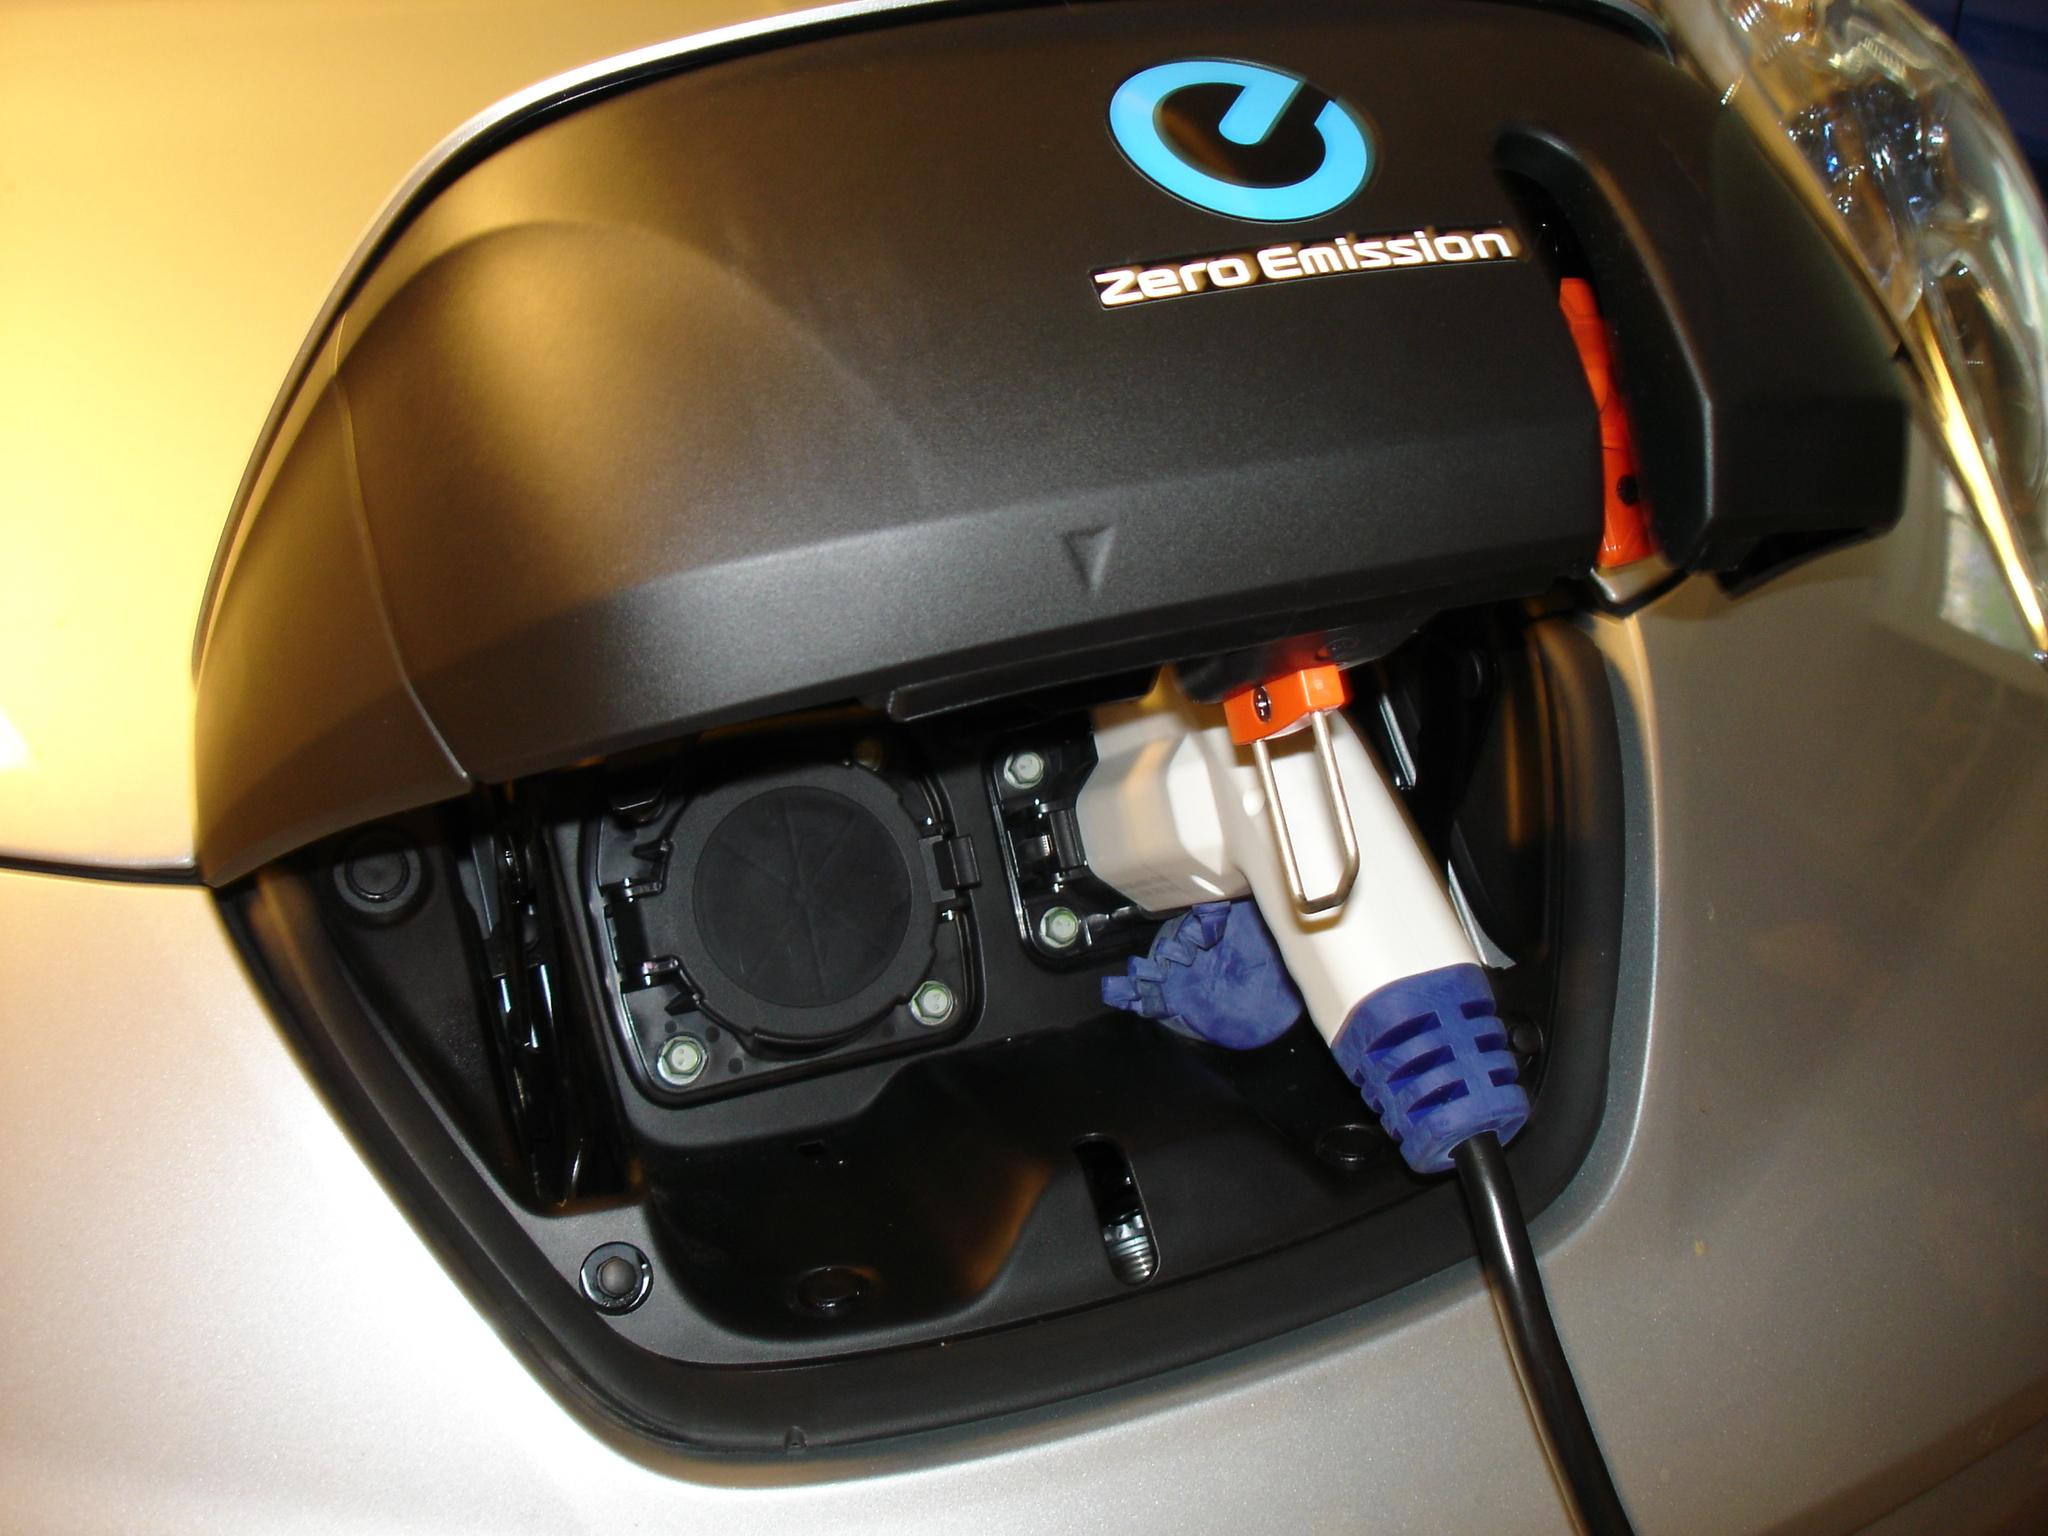 Abdeckung für Ladeanschluss / Leaf charging port lid cover - Leaf ZE0 -  Laden, Ladeequipment • Nissan Leaf ZE0 - Elektroauto Forum